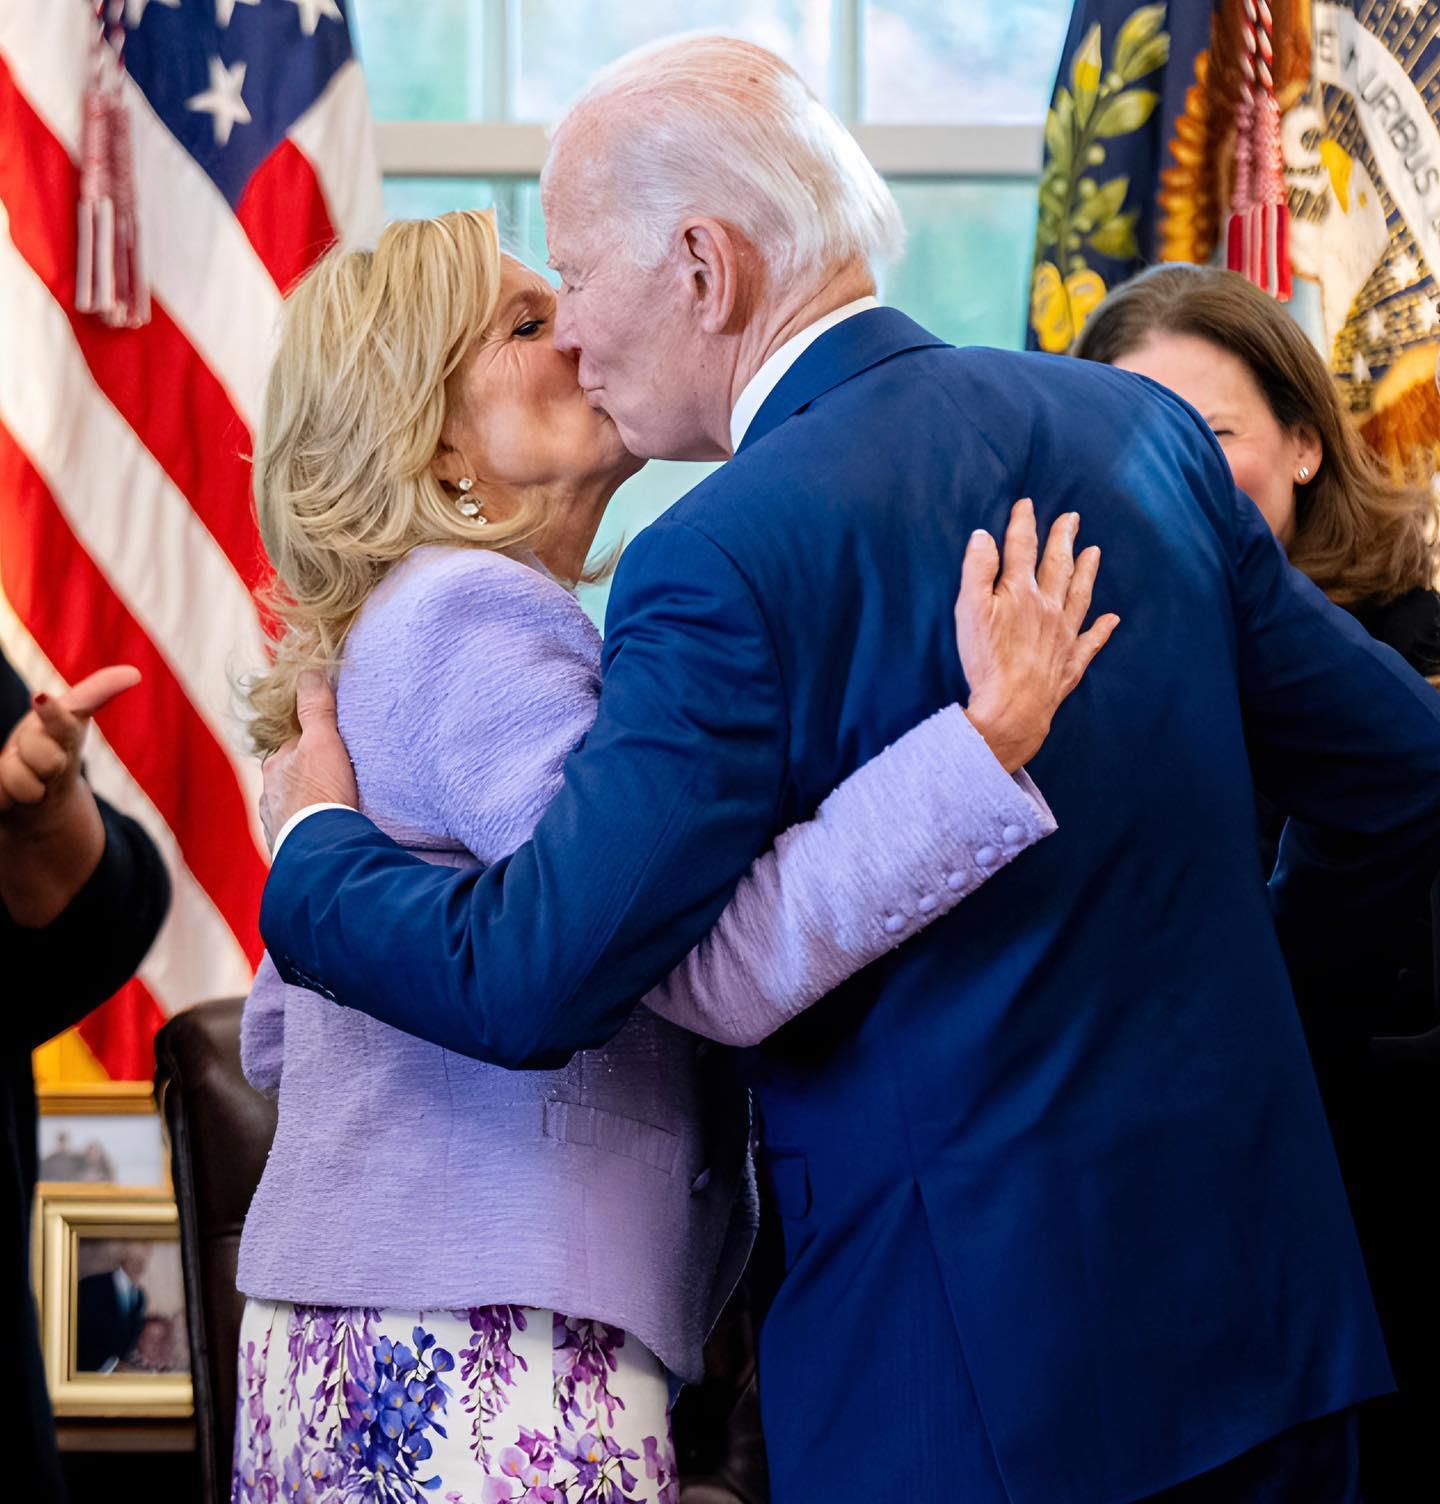 拜登和夫人在白宫当众亲吻!把人甜到了,第一夫人紫裙造型可真嫩